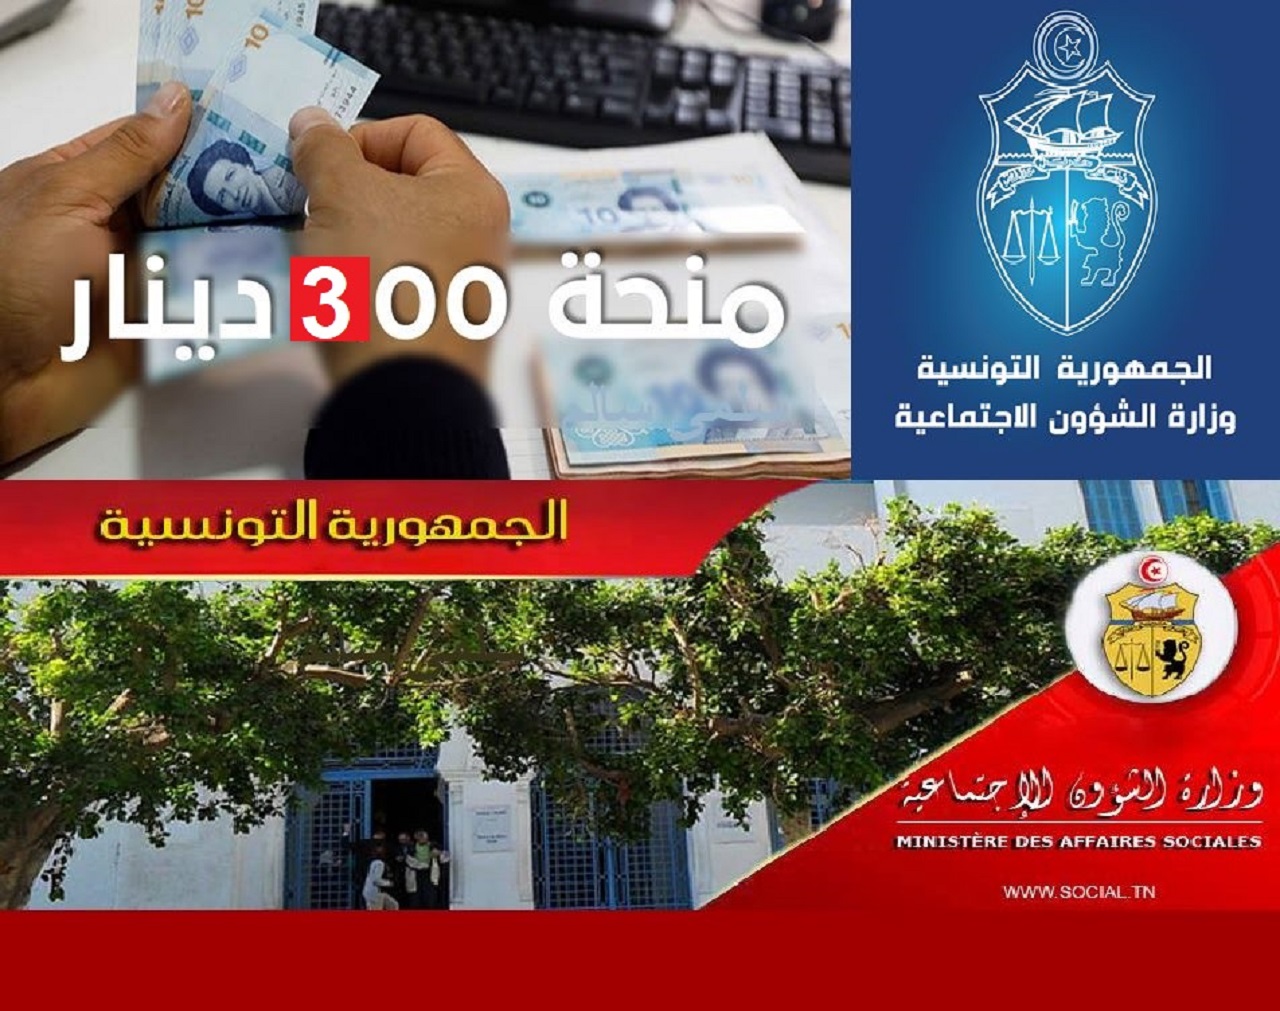 “منحة 300 دينار” رابط تسجيل منصة أمان التونسية للعاطلين عن العمل فى تونس 2021